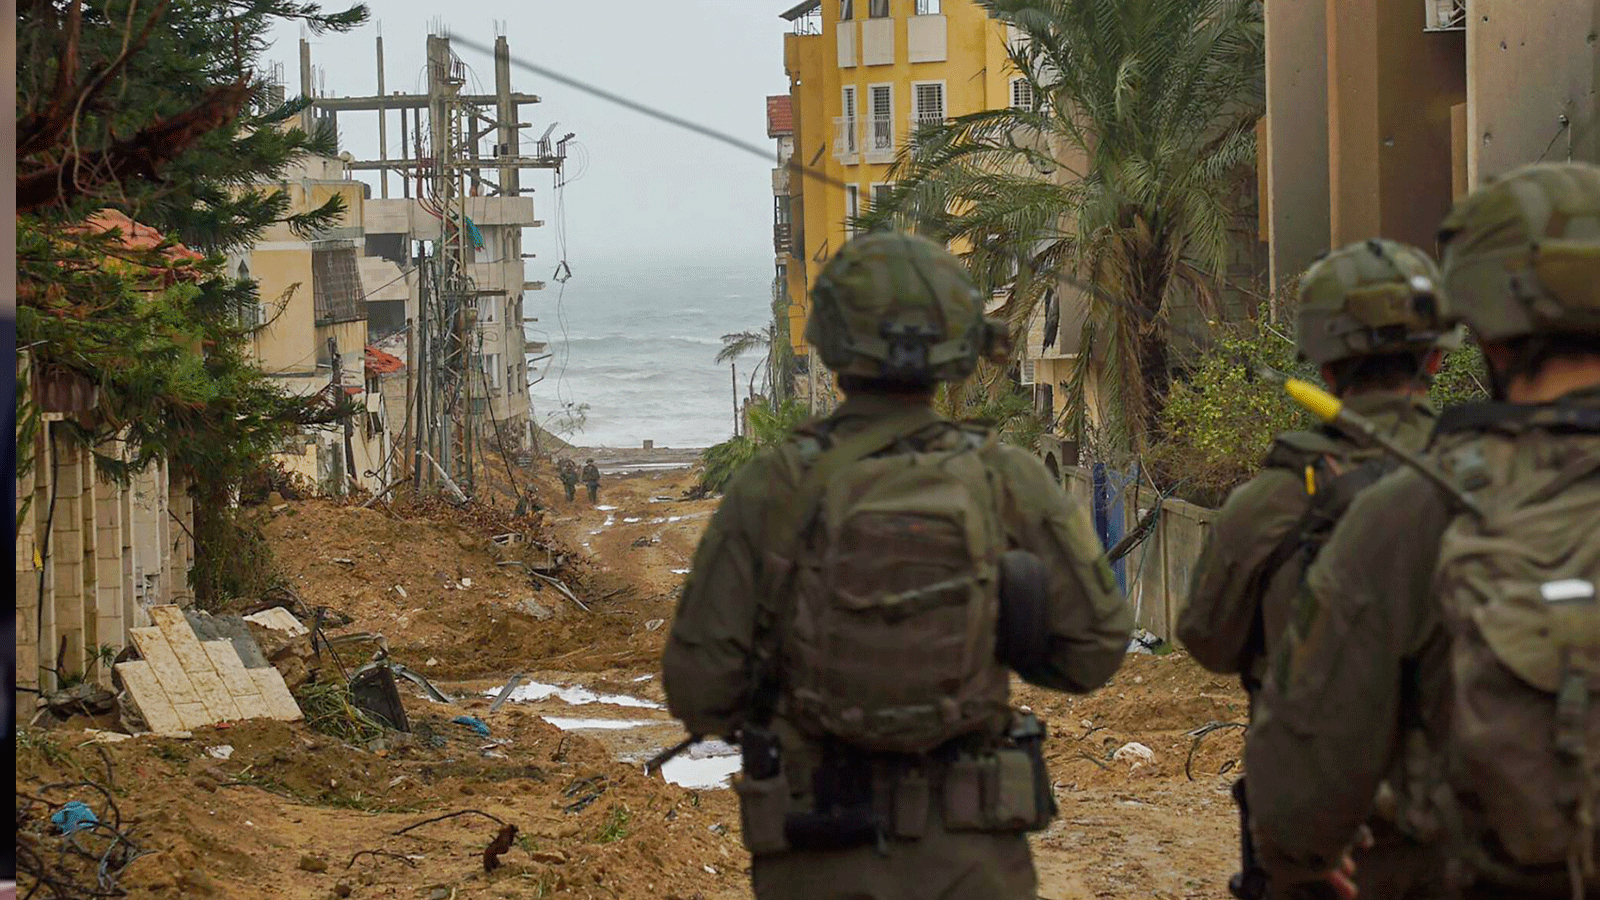 صورة نشرها الجيش الإسرائيلي لعناصر من قواته على الأرض في شمال قطاع غزةتل